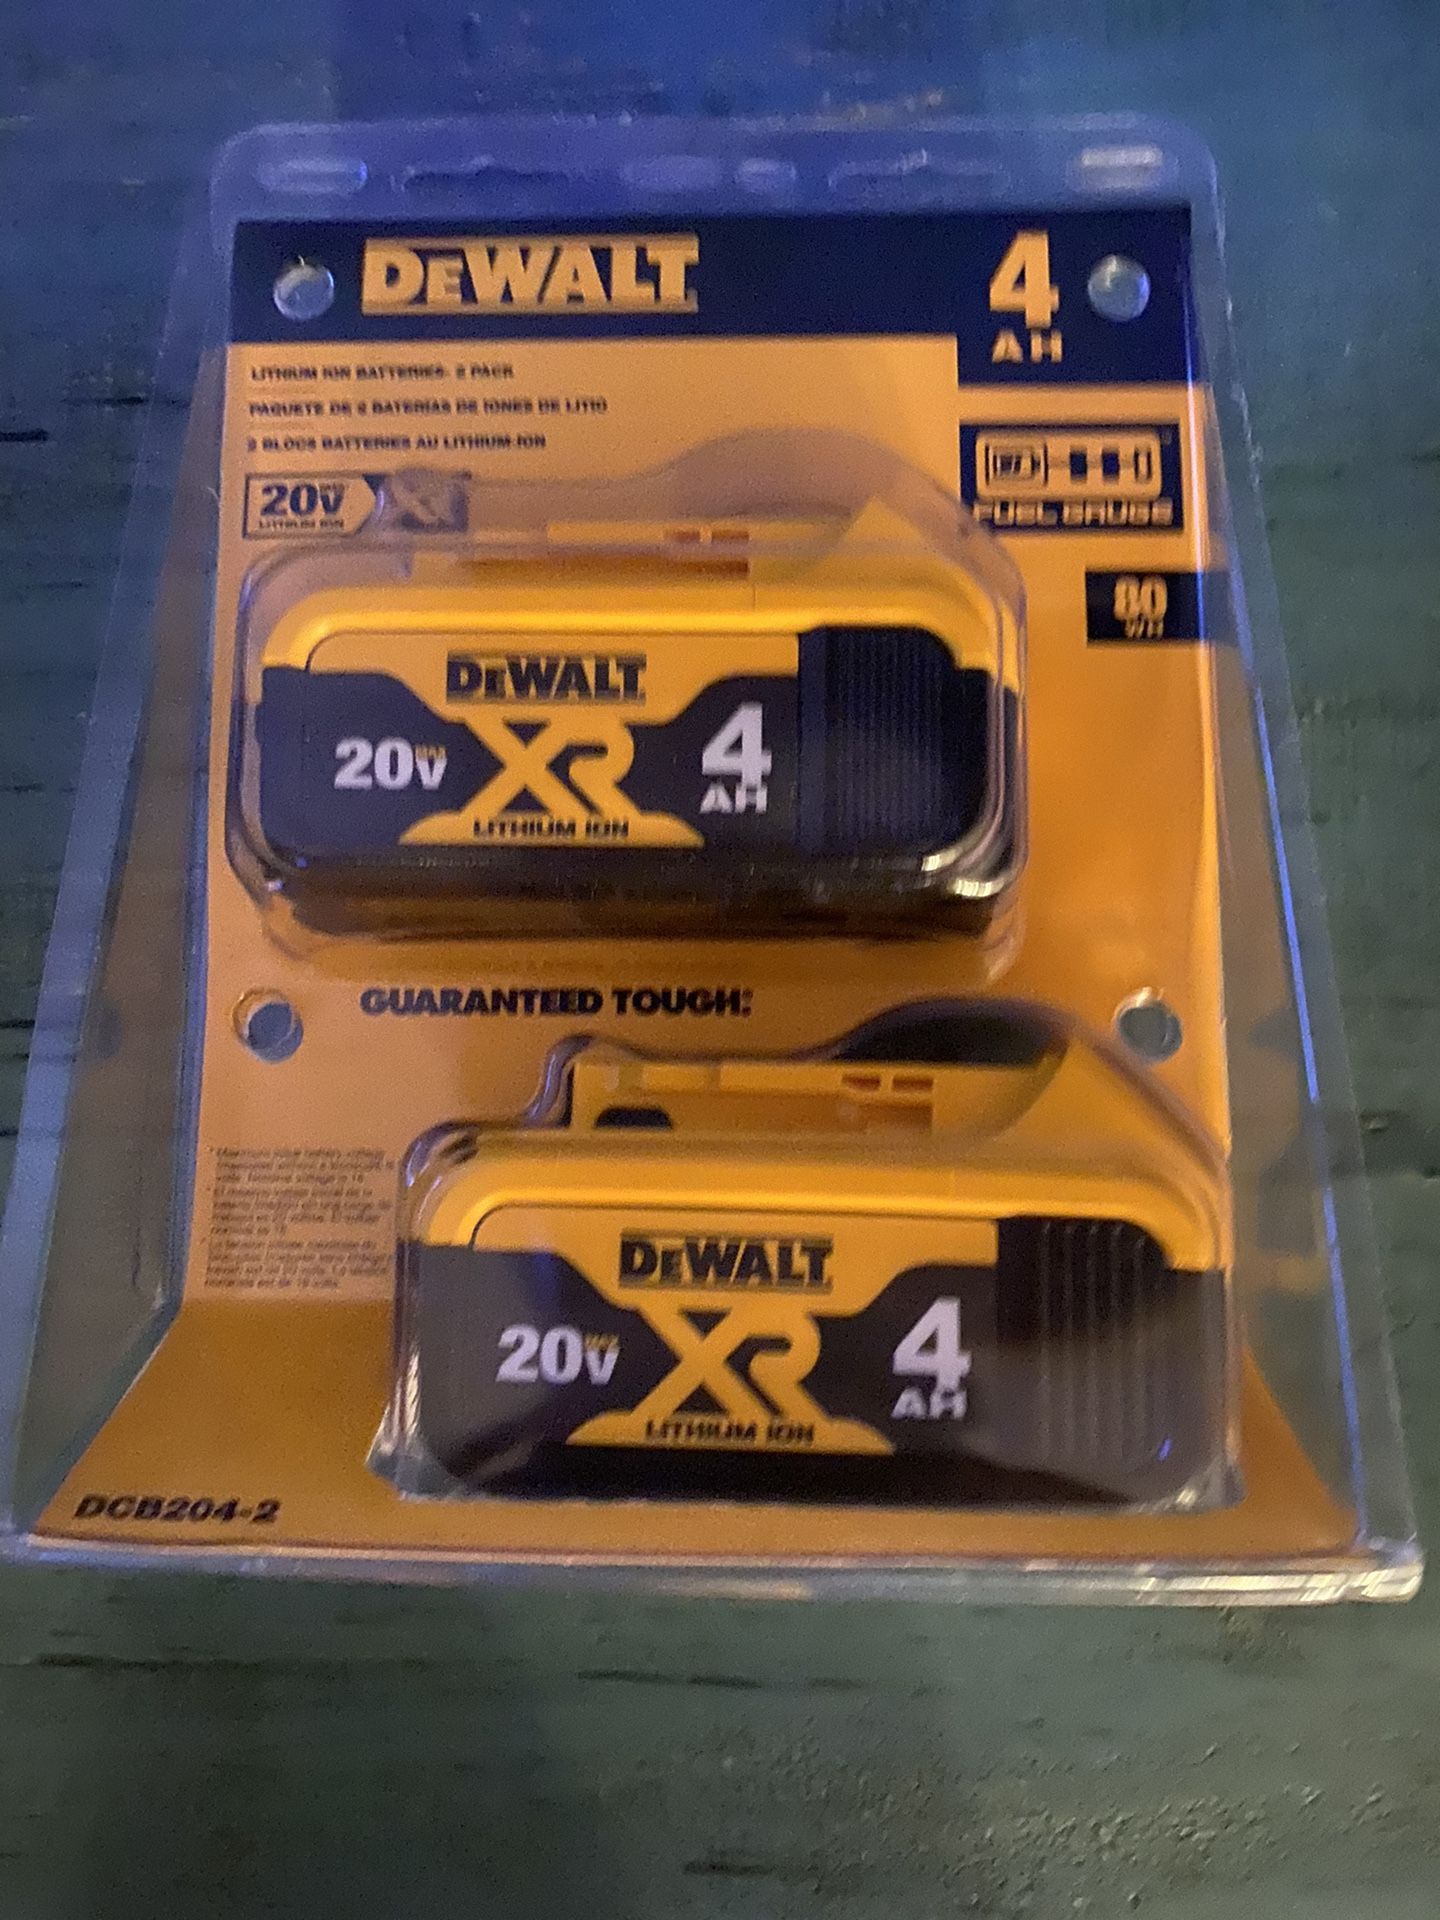 DeWalt batteries